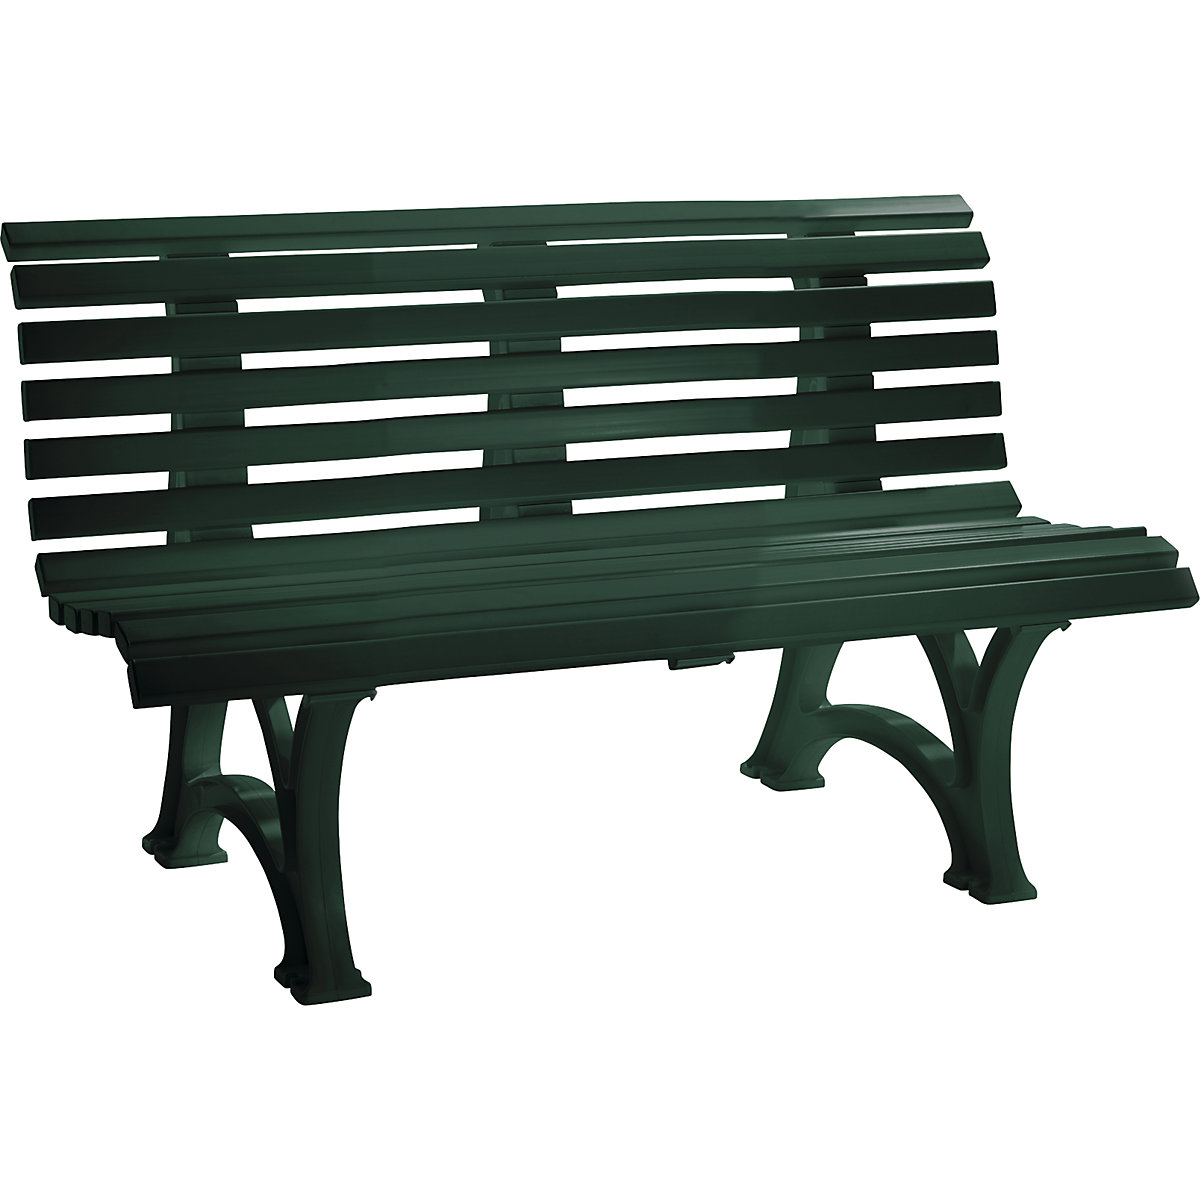 Parková lavička z plastu, s 13 lištami, šířka 1500 mm, mechově zelená-7